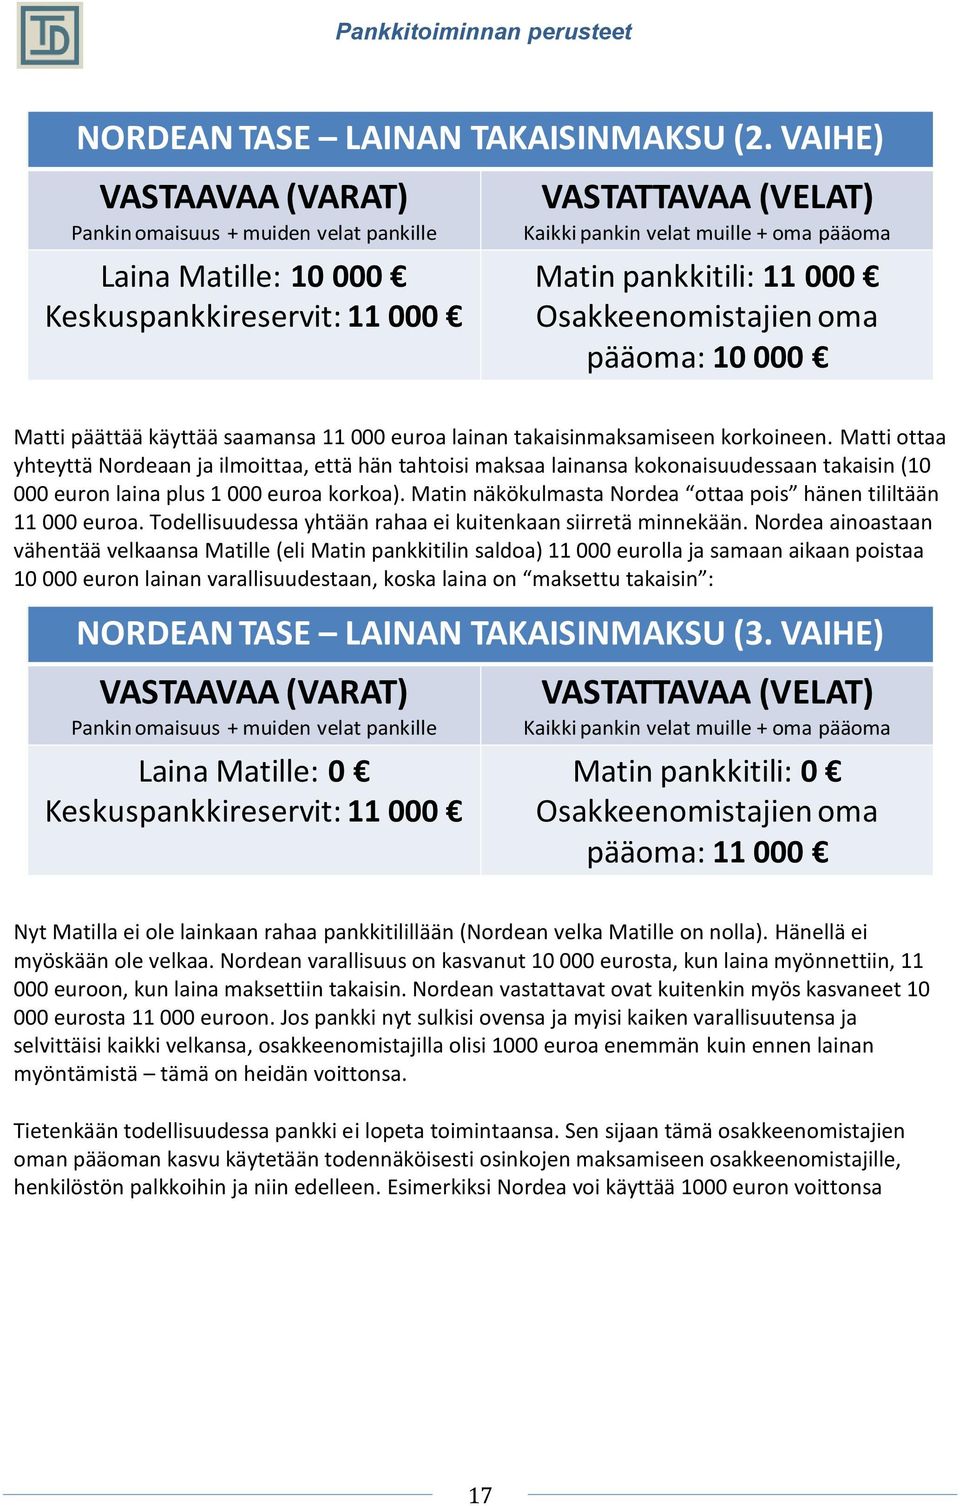 Matti ottaa yhteyttä Nordeaan ja ilmoittaa, että hän tahtoisi maksaa lainansa kokonaisuudessaan takaisin (10 000 euron laina plus 1 000 euroa korkoa).